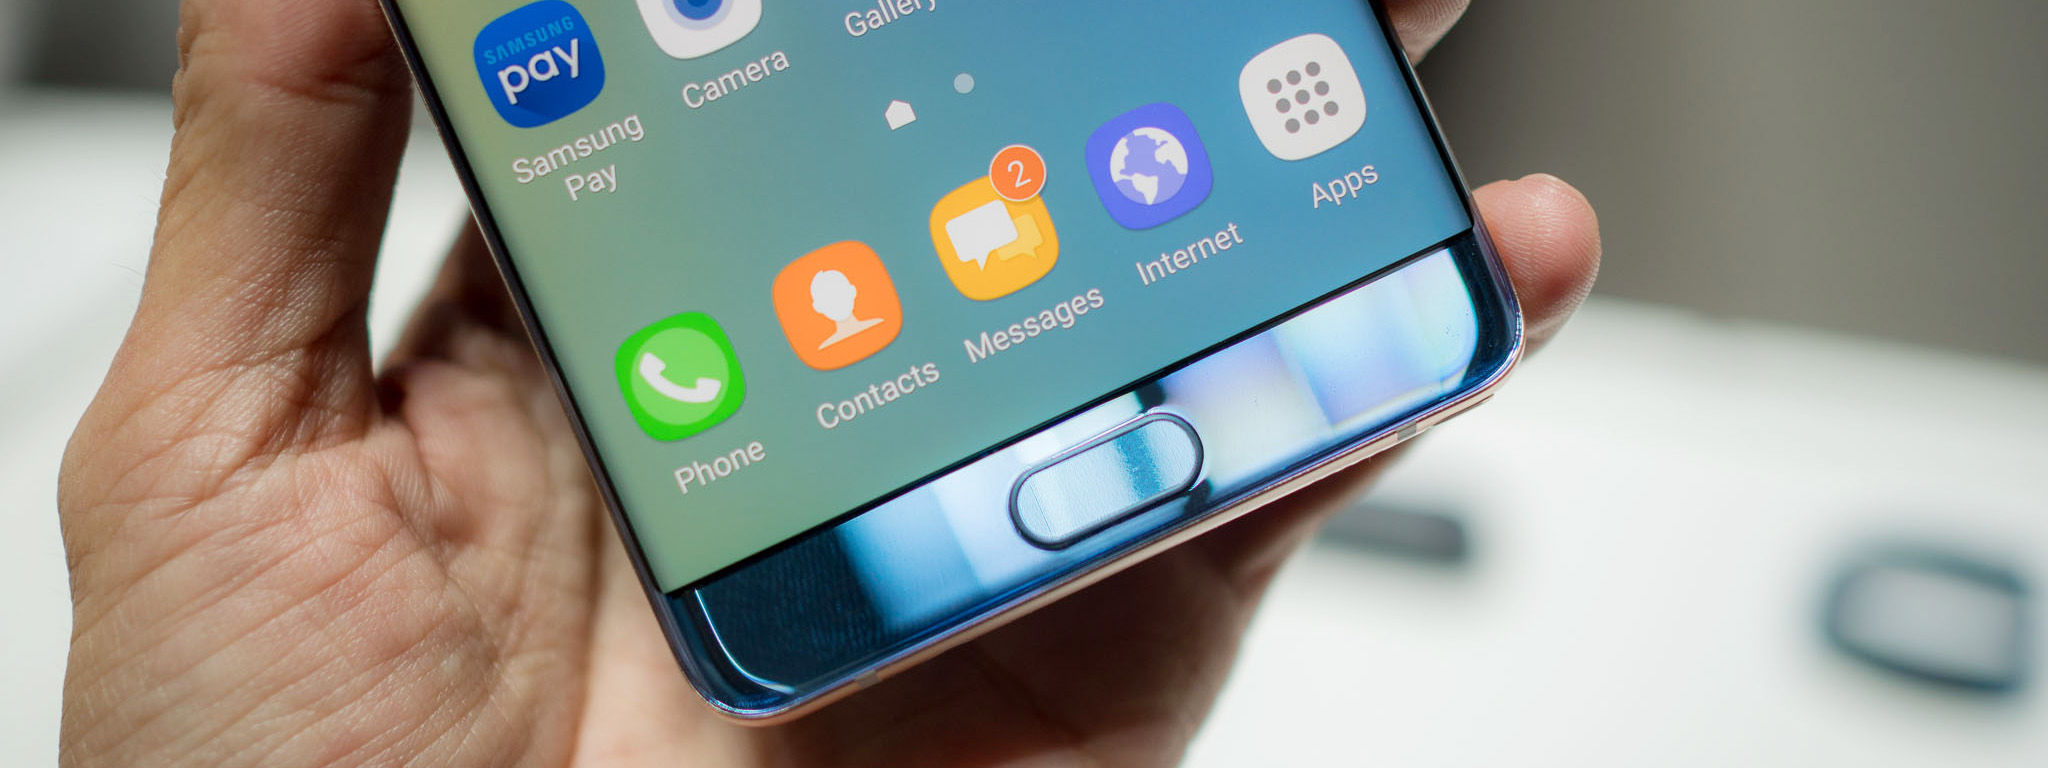 Vụ thu hồi Note 7 có thể tiêu tốn của Samsung 1 tỉ USD, nhưng thiệt hại về danh tiếng mới là đáng kể